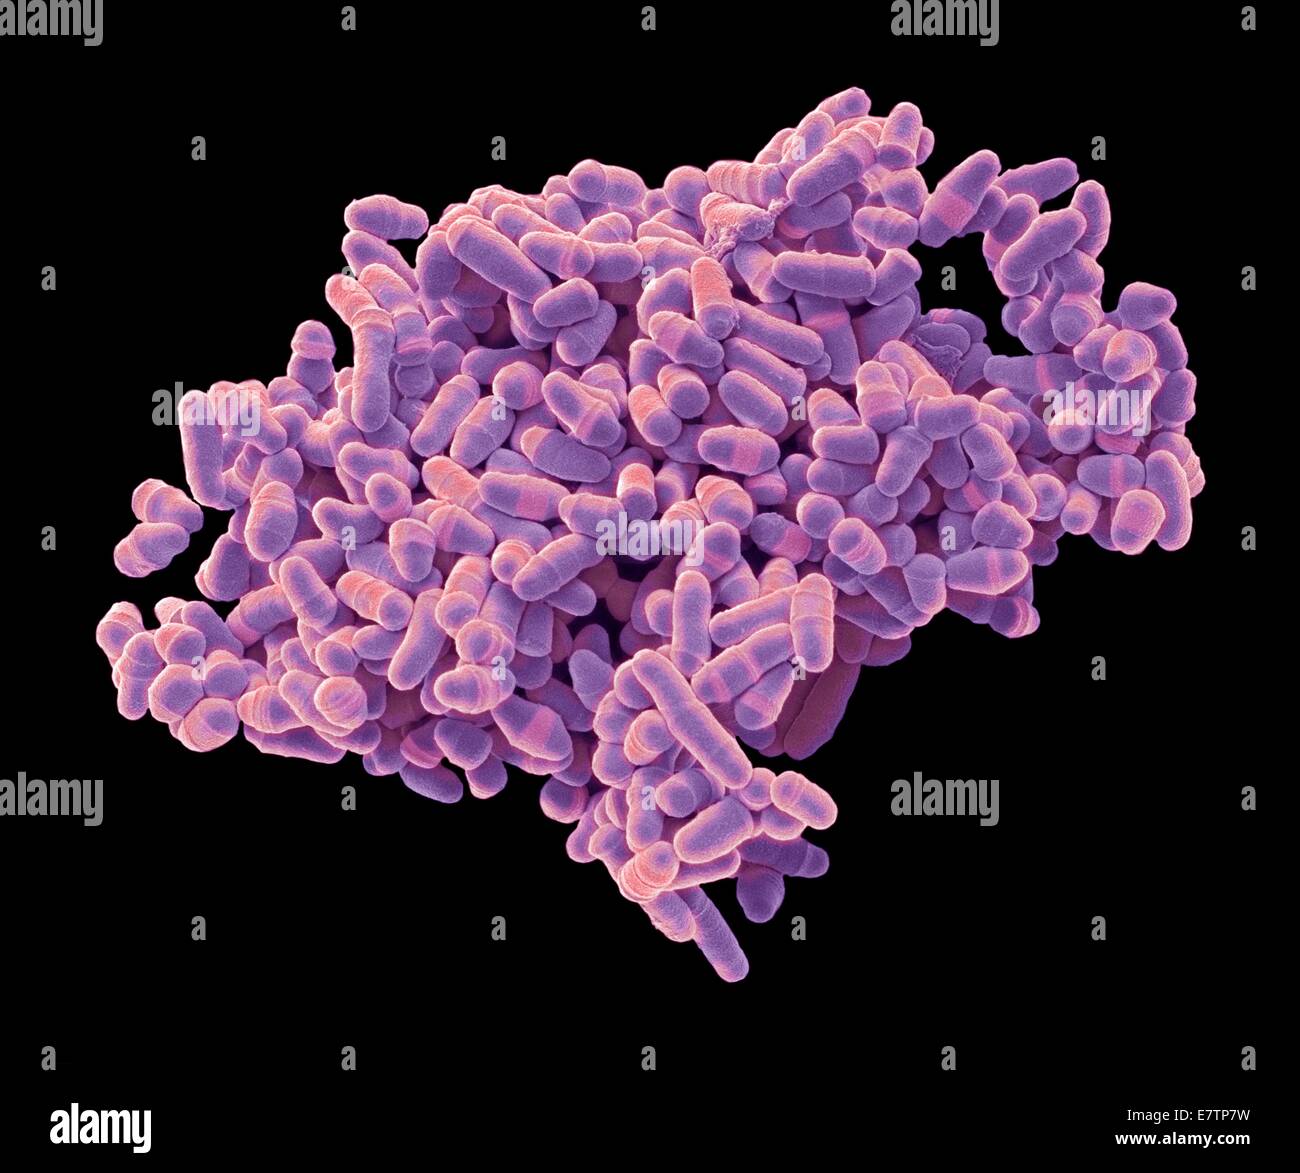 Color scanning electron microfotografia (SEM) di Schizosaccharomyces pombe lievito. S. pombe è un singolo-celled fungo che è ampiamente studiato come un organismo modello per cellula eucariotica divisione. Si tratta di un'asta a forma di lievito che cresce da un allungamento in corrispondenza delle sue estremità. Esso r Foto Stock